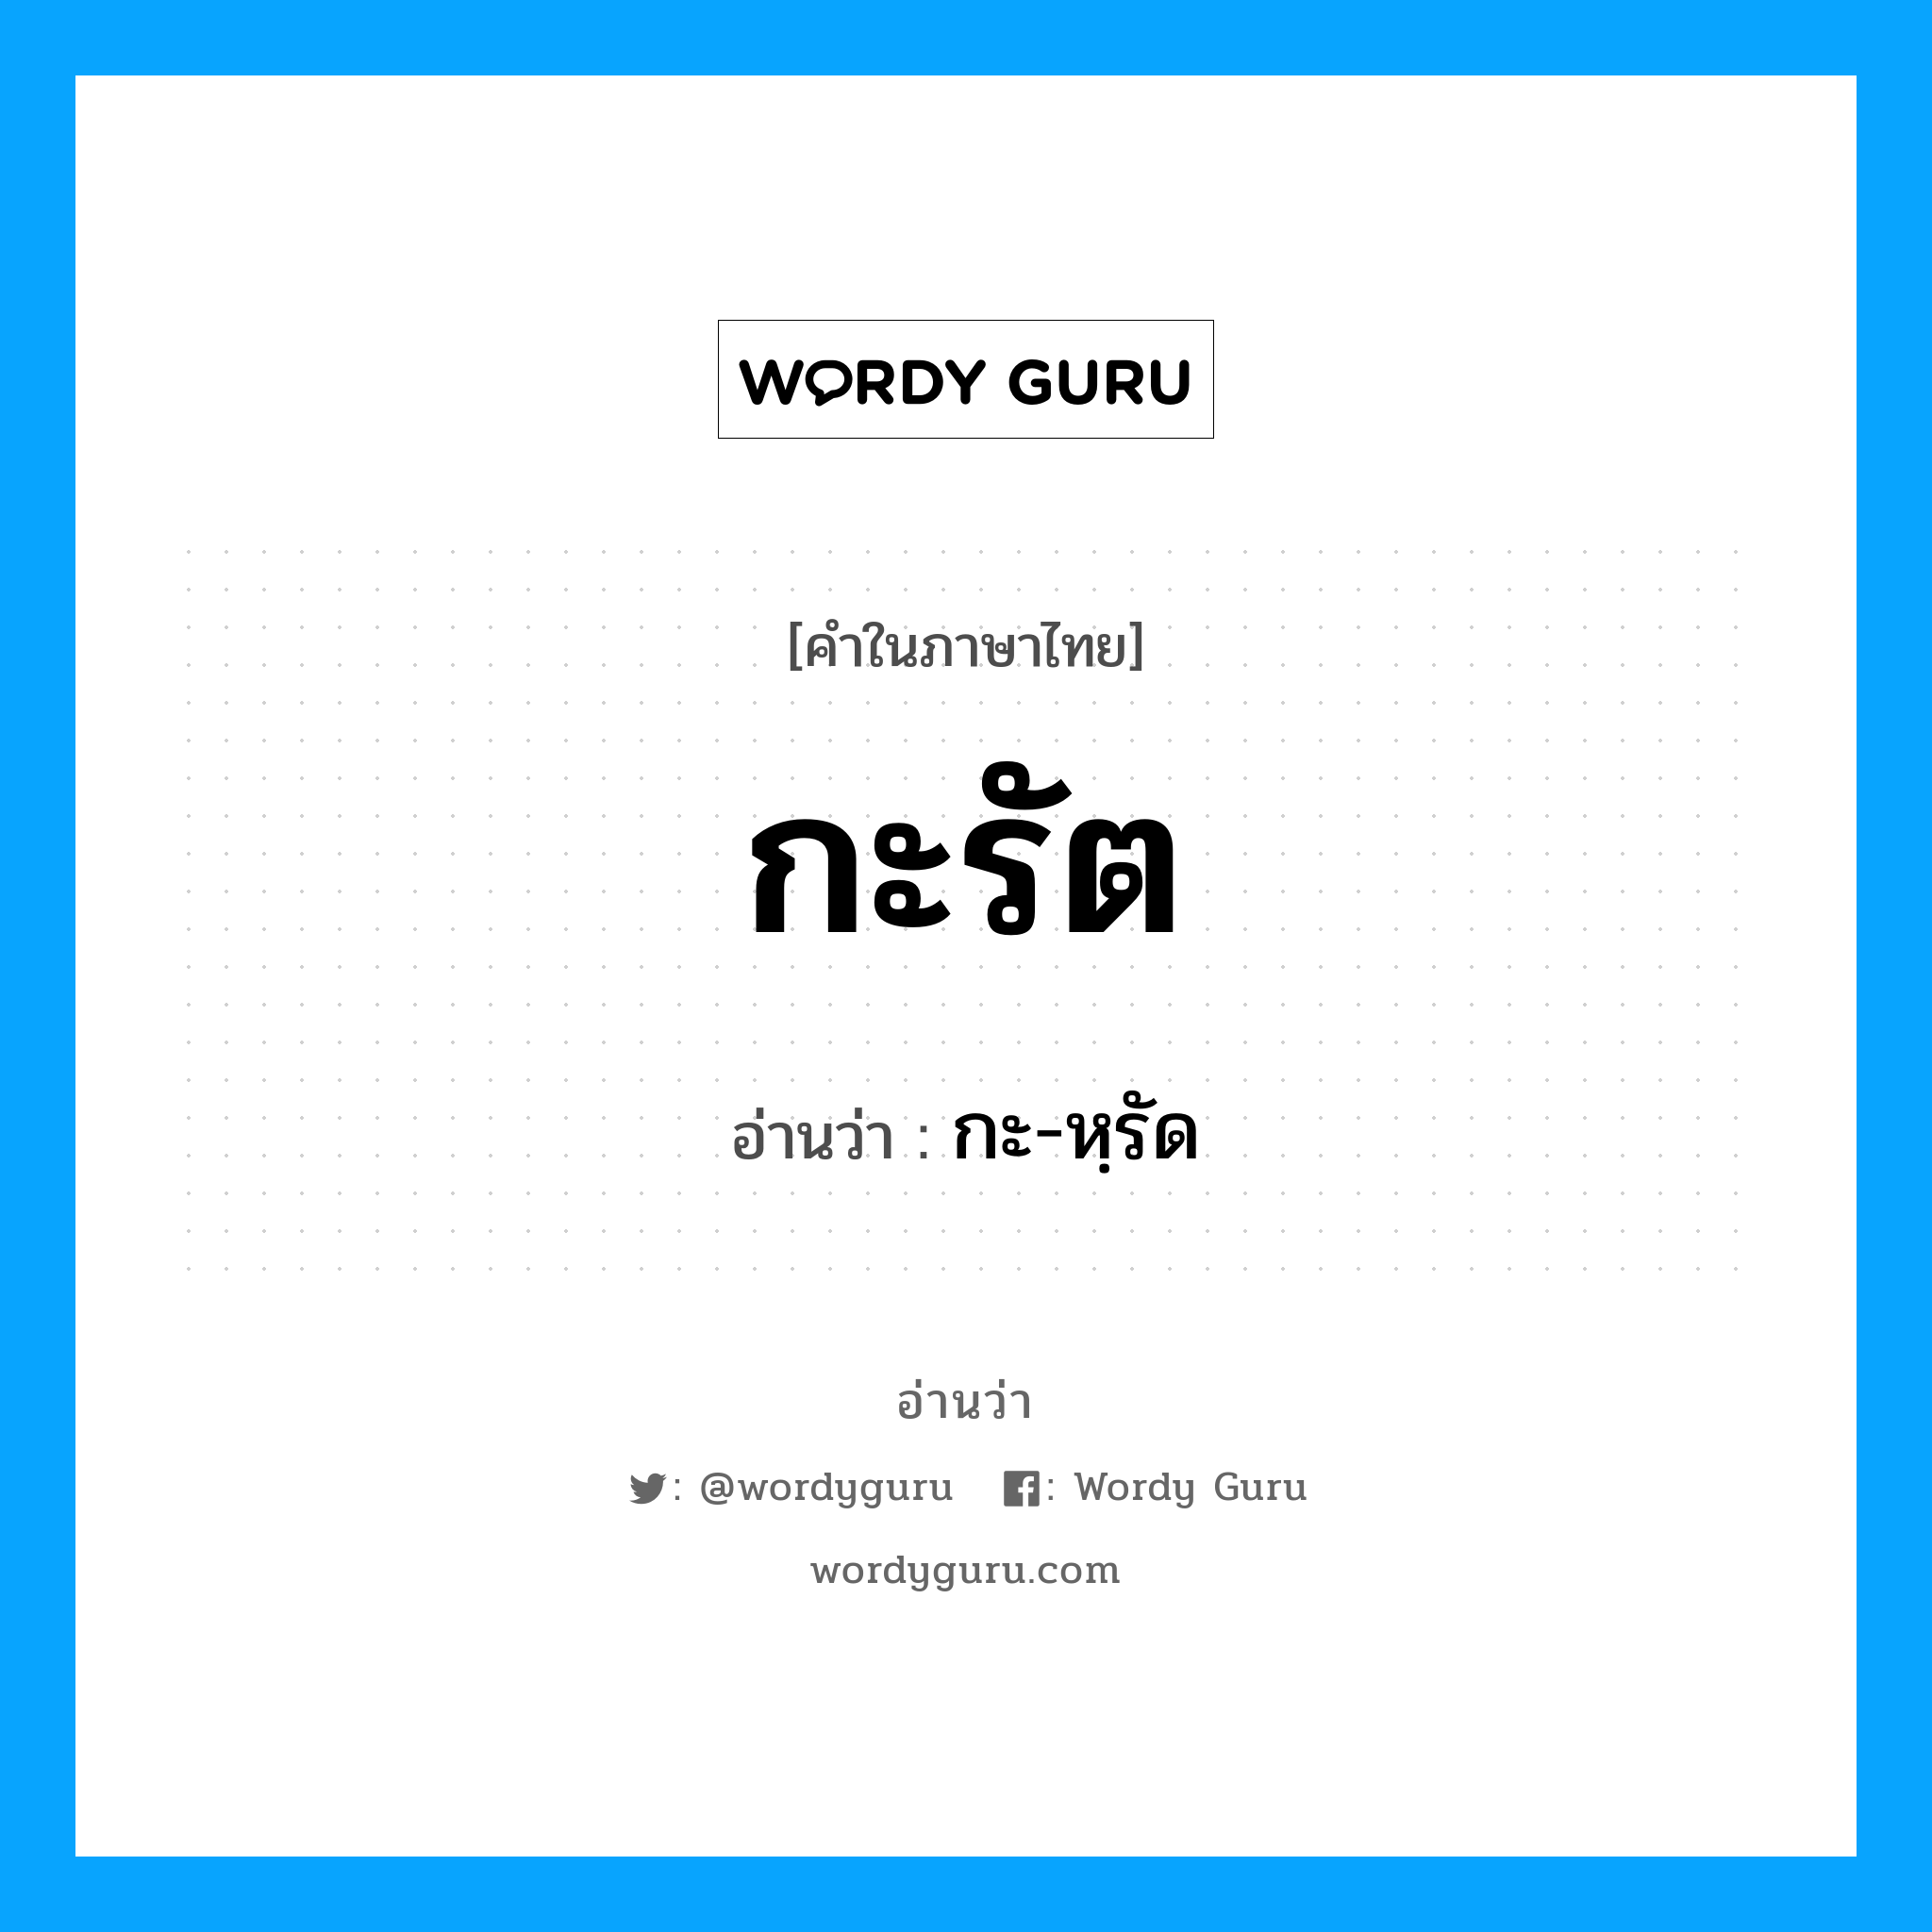 กะ-หฺรัด เป็นคำอ่านของคำไหน?, คำในภาษาไทย กะ-หฺรัด อ่านว่า กะรัต